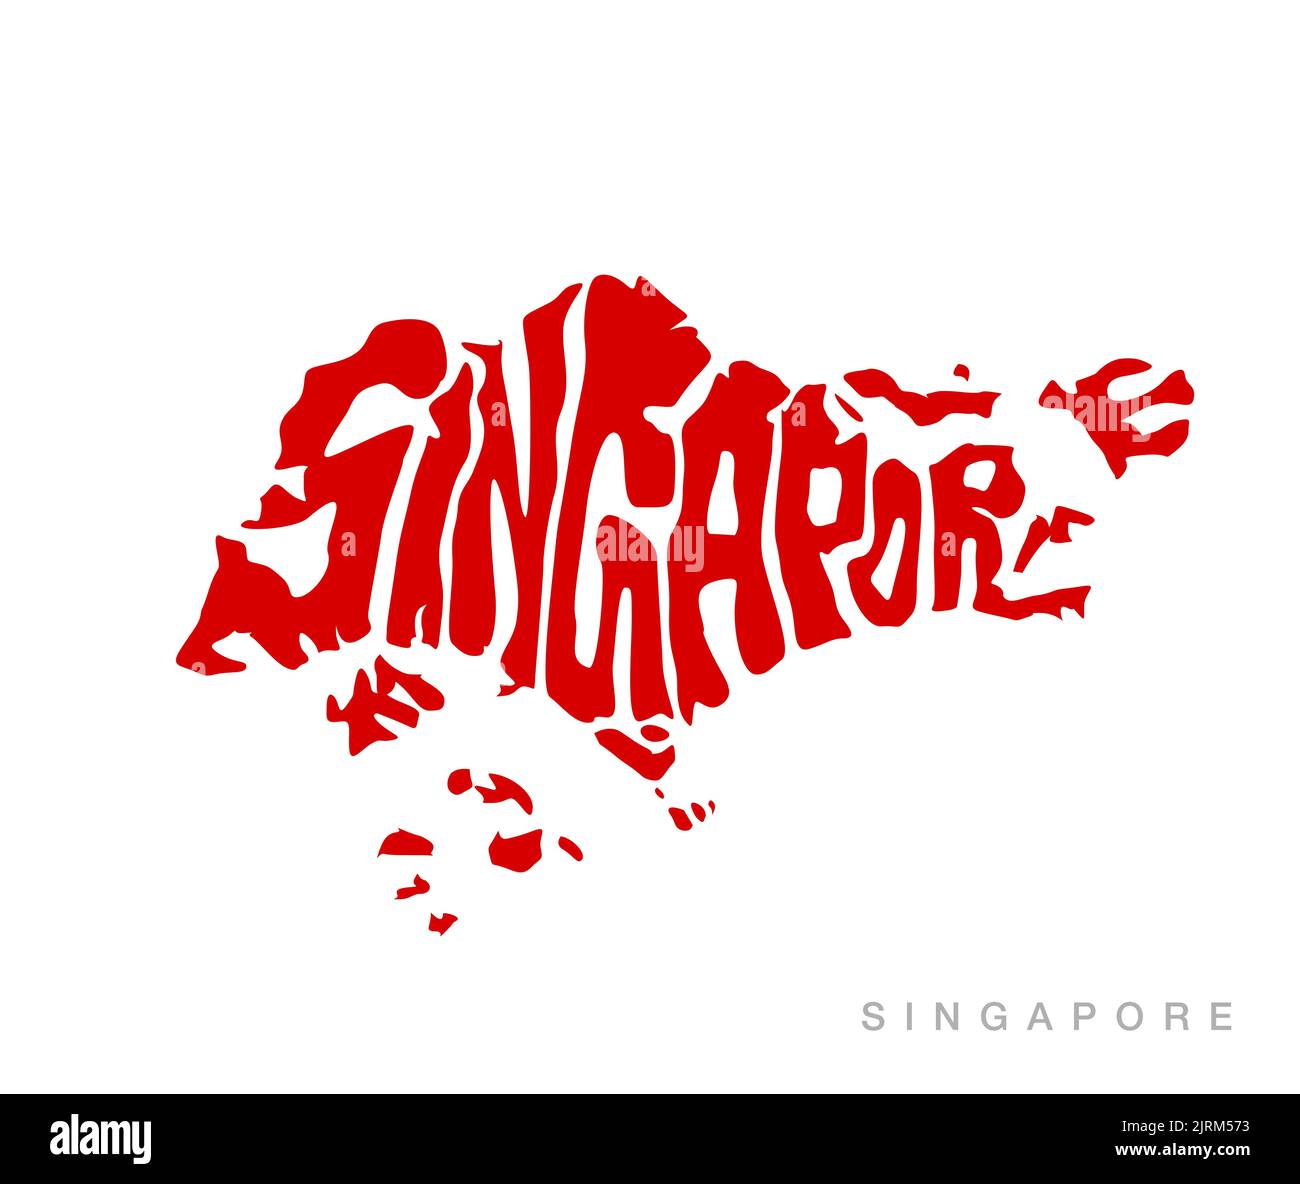 Eine Kartografie für Singapur mit Singapur in Kartenform Stockfoto